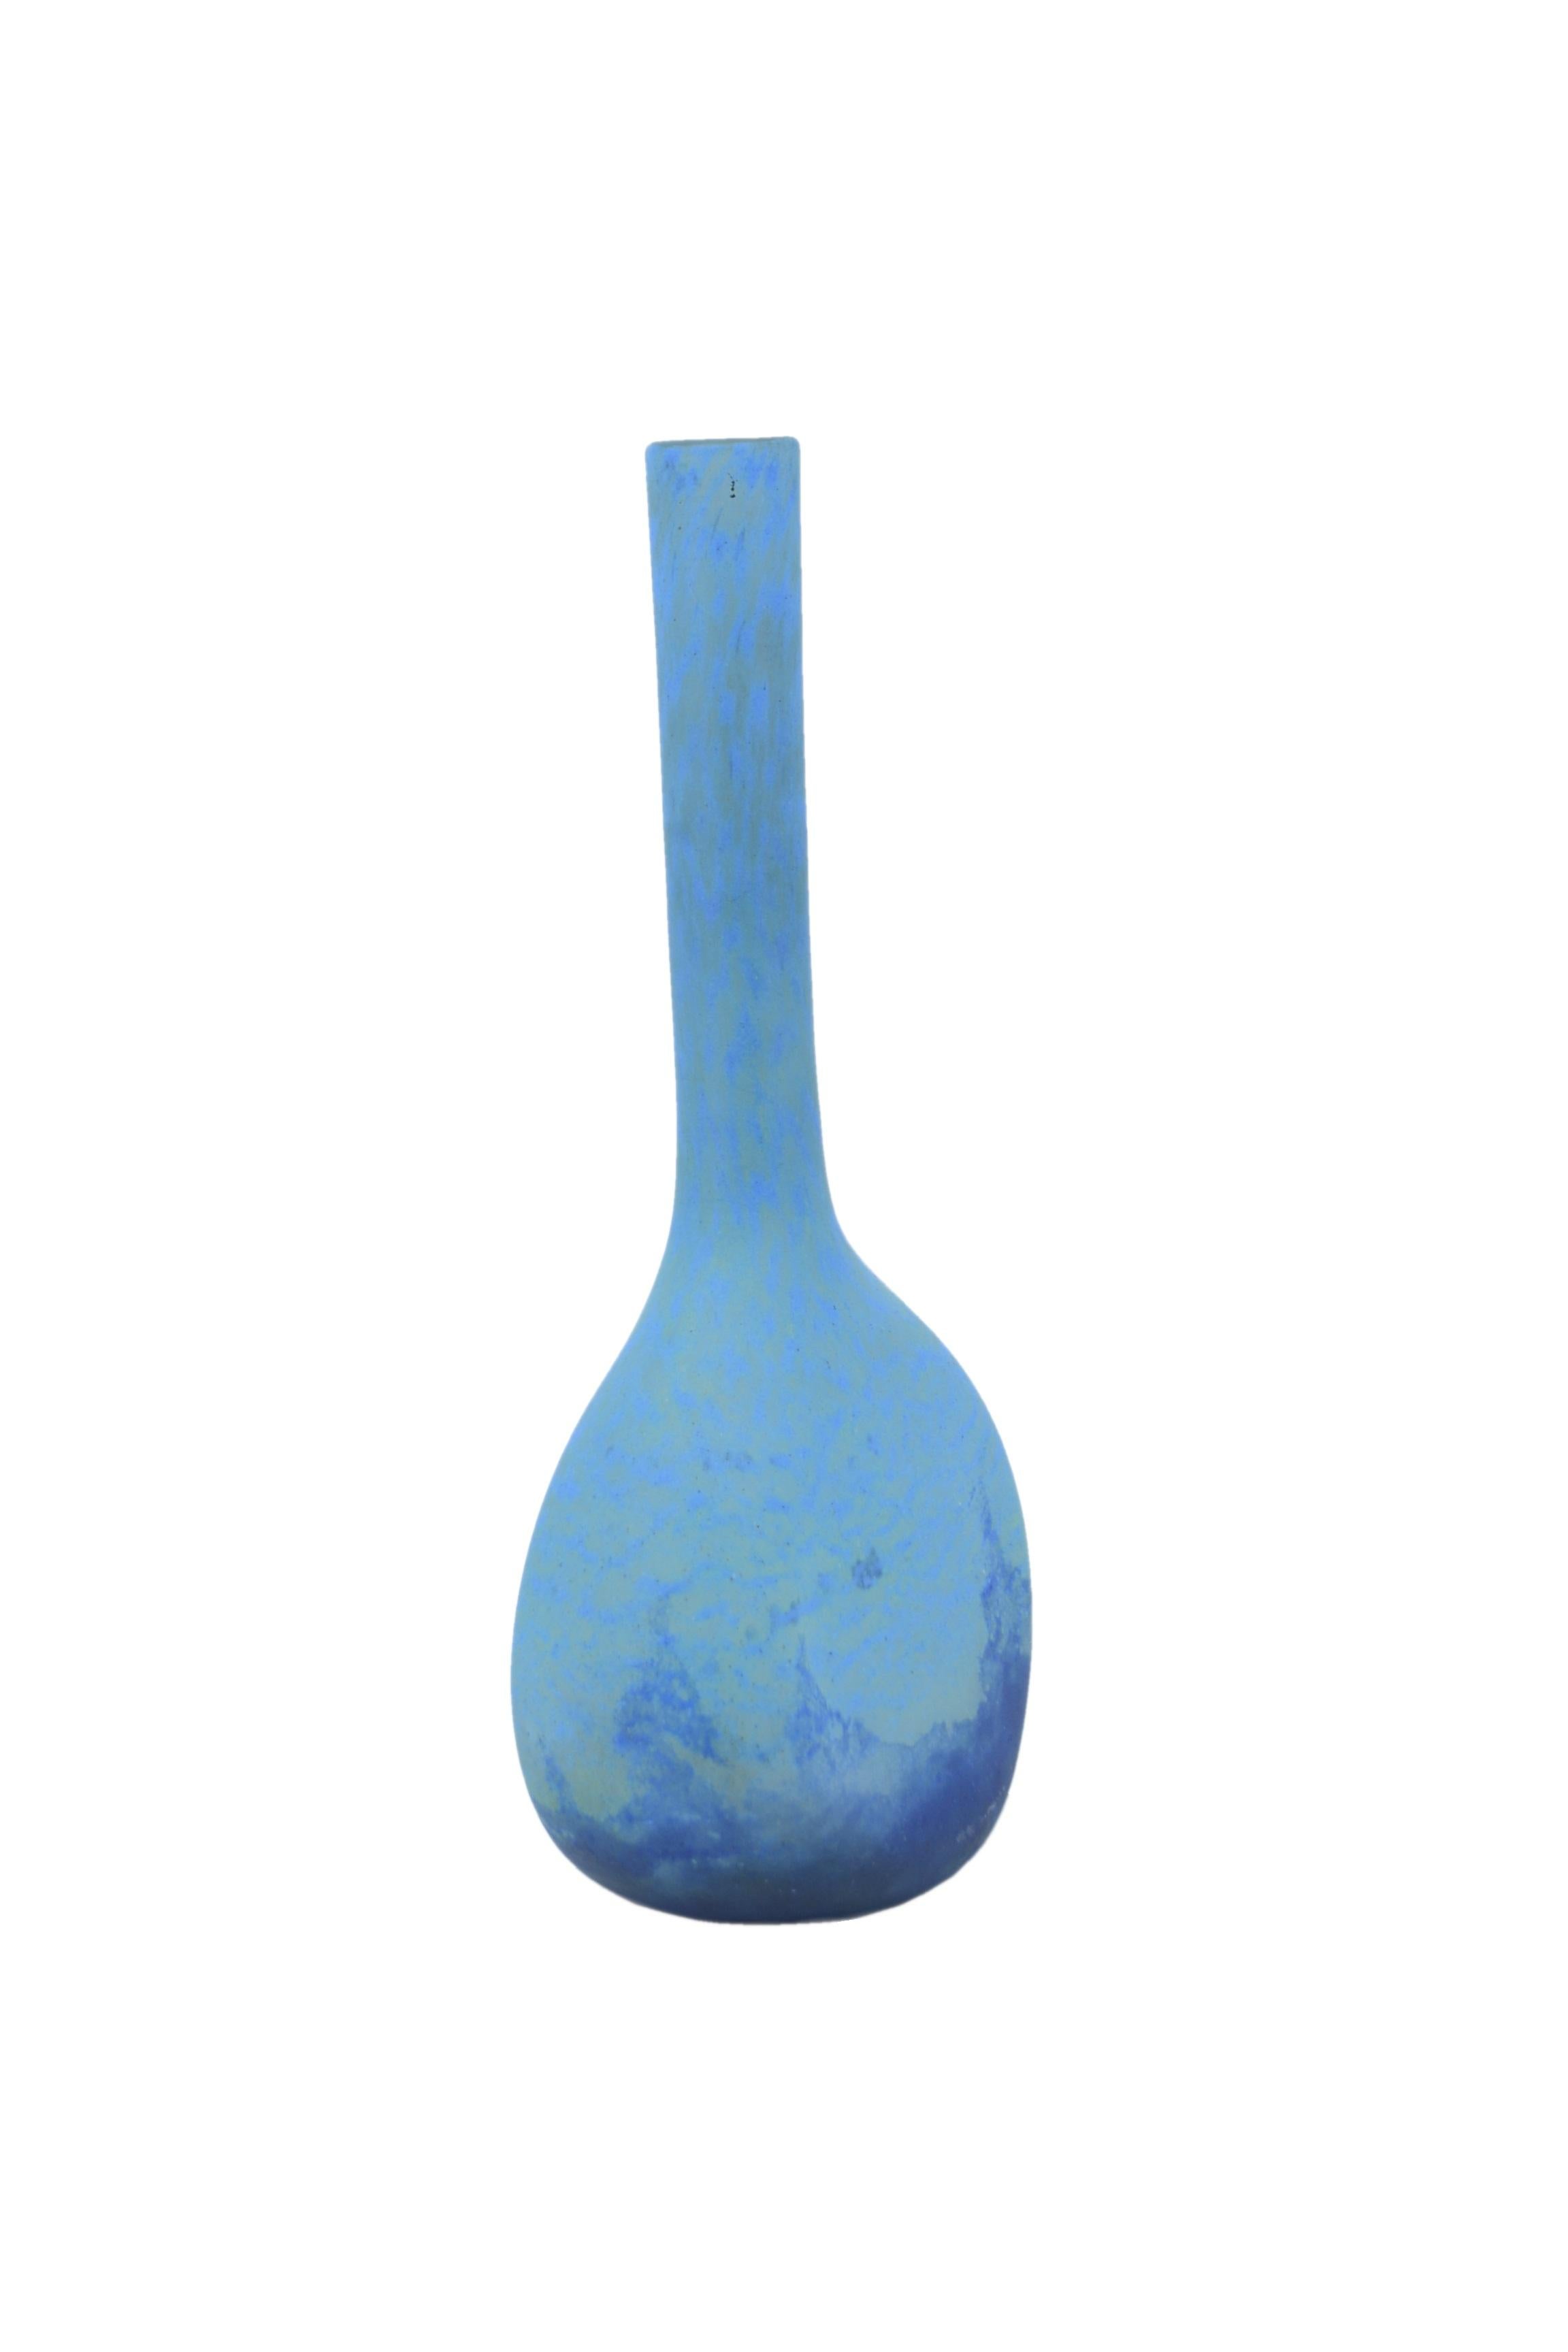 Art Nouveau Daum Nancy, Large Blue Vase with Long Neck For Sale